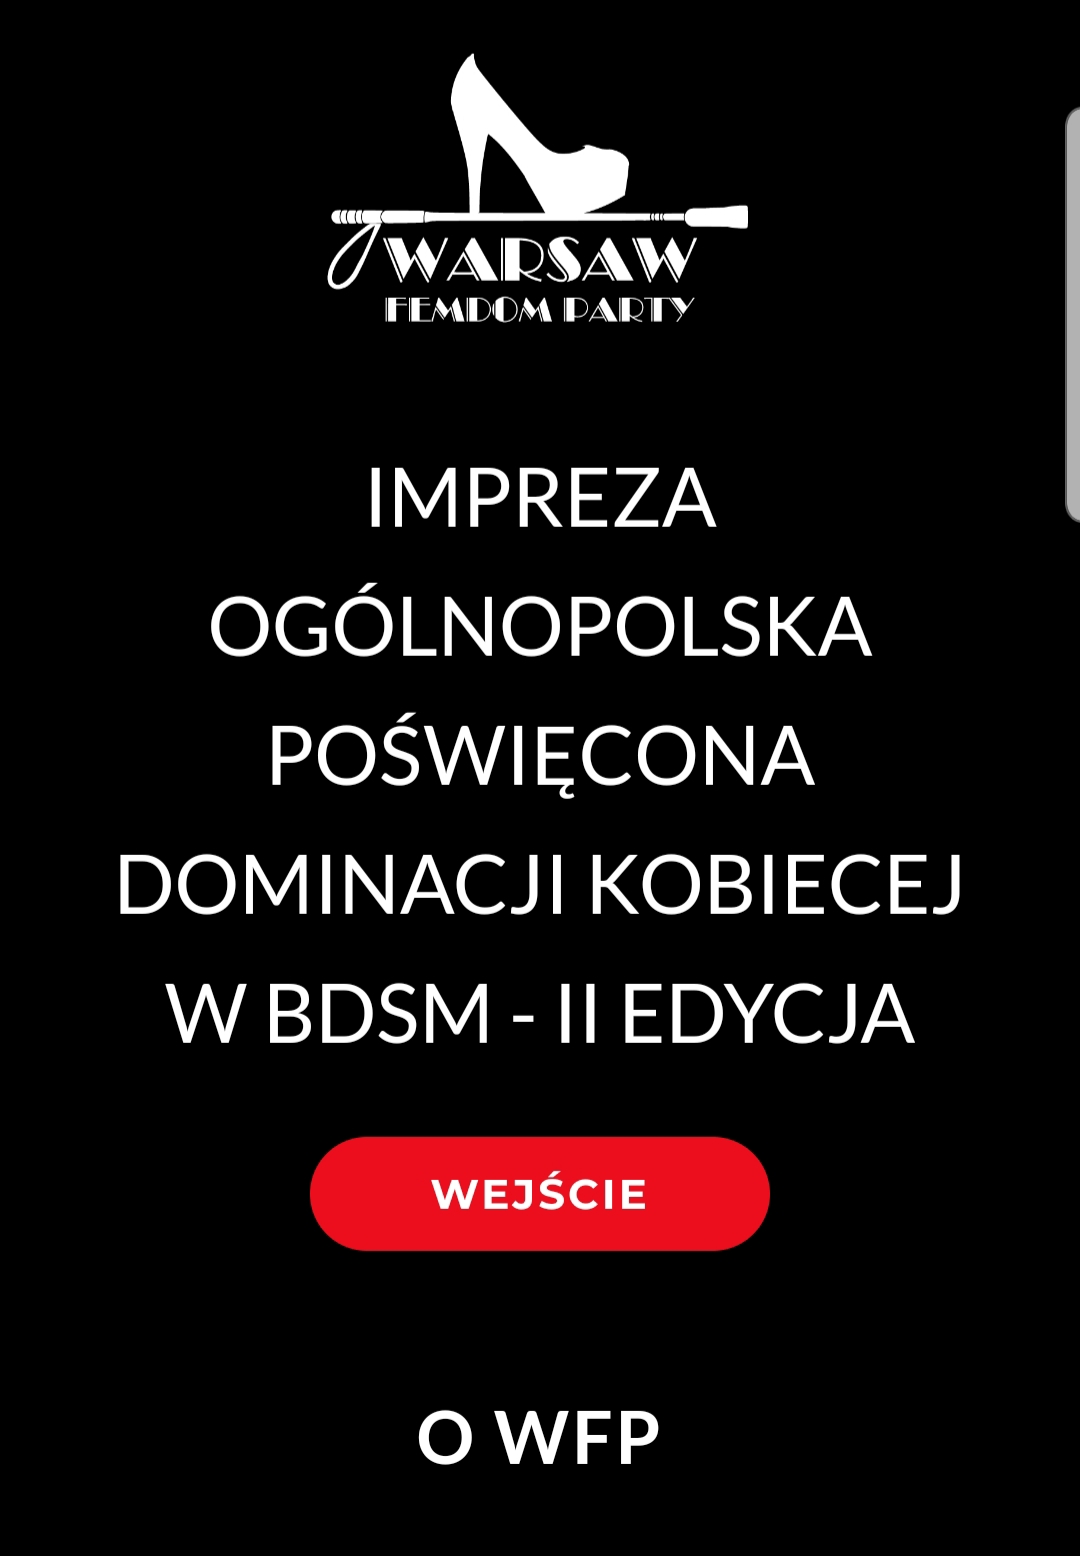 Warsaw FEMDOM PARTY 14.05